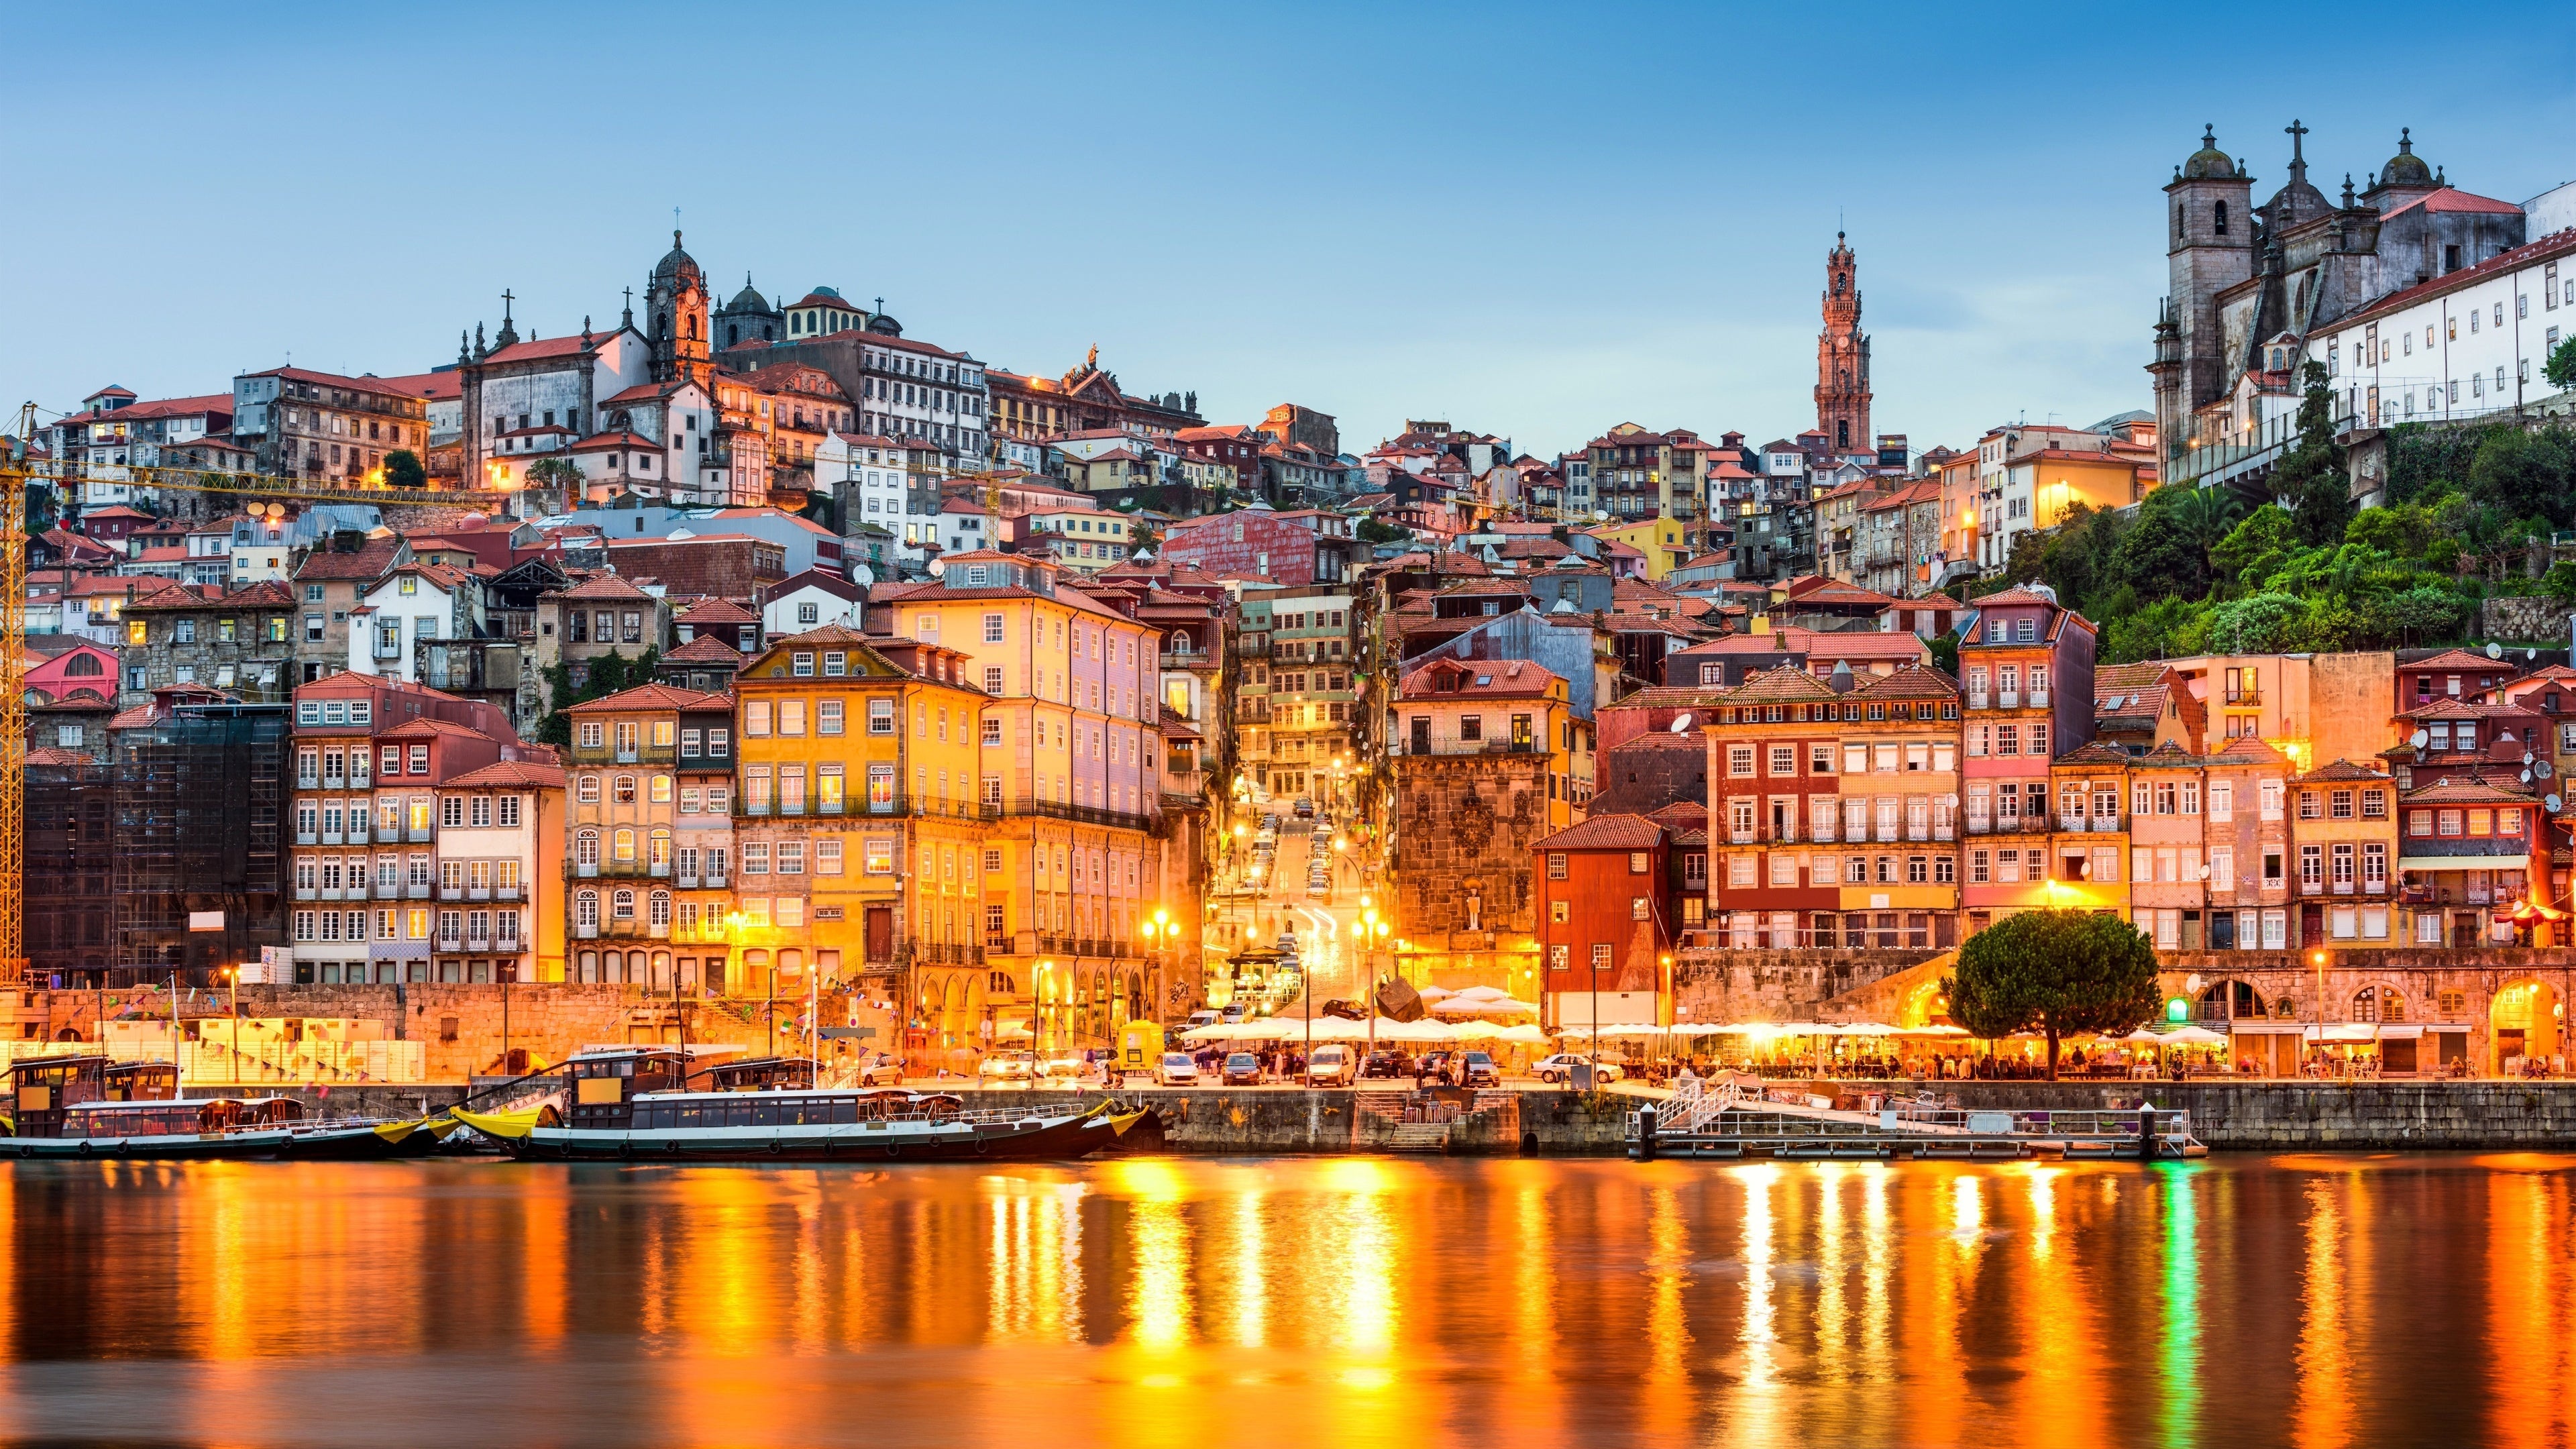 Lisbon Portugal scenery, Macbook wallpaper, Desktop and mobile download, Football fan, 3840x2160 4K Desktop